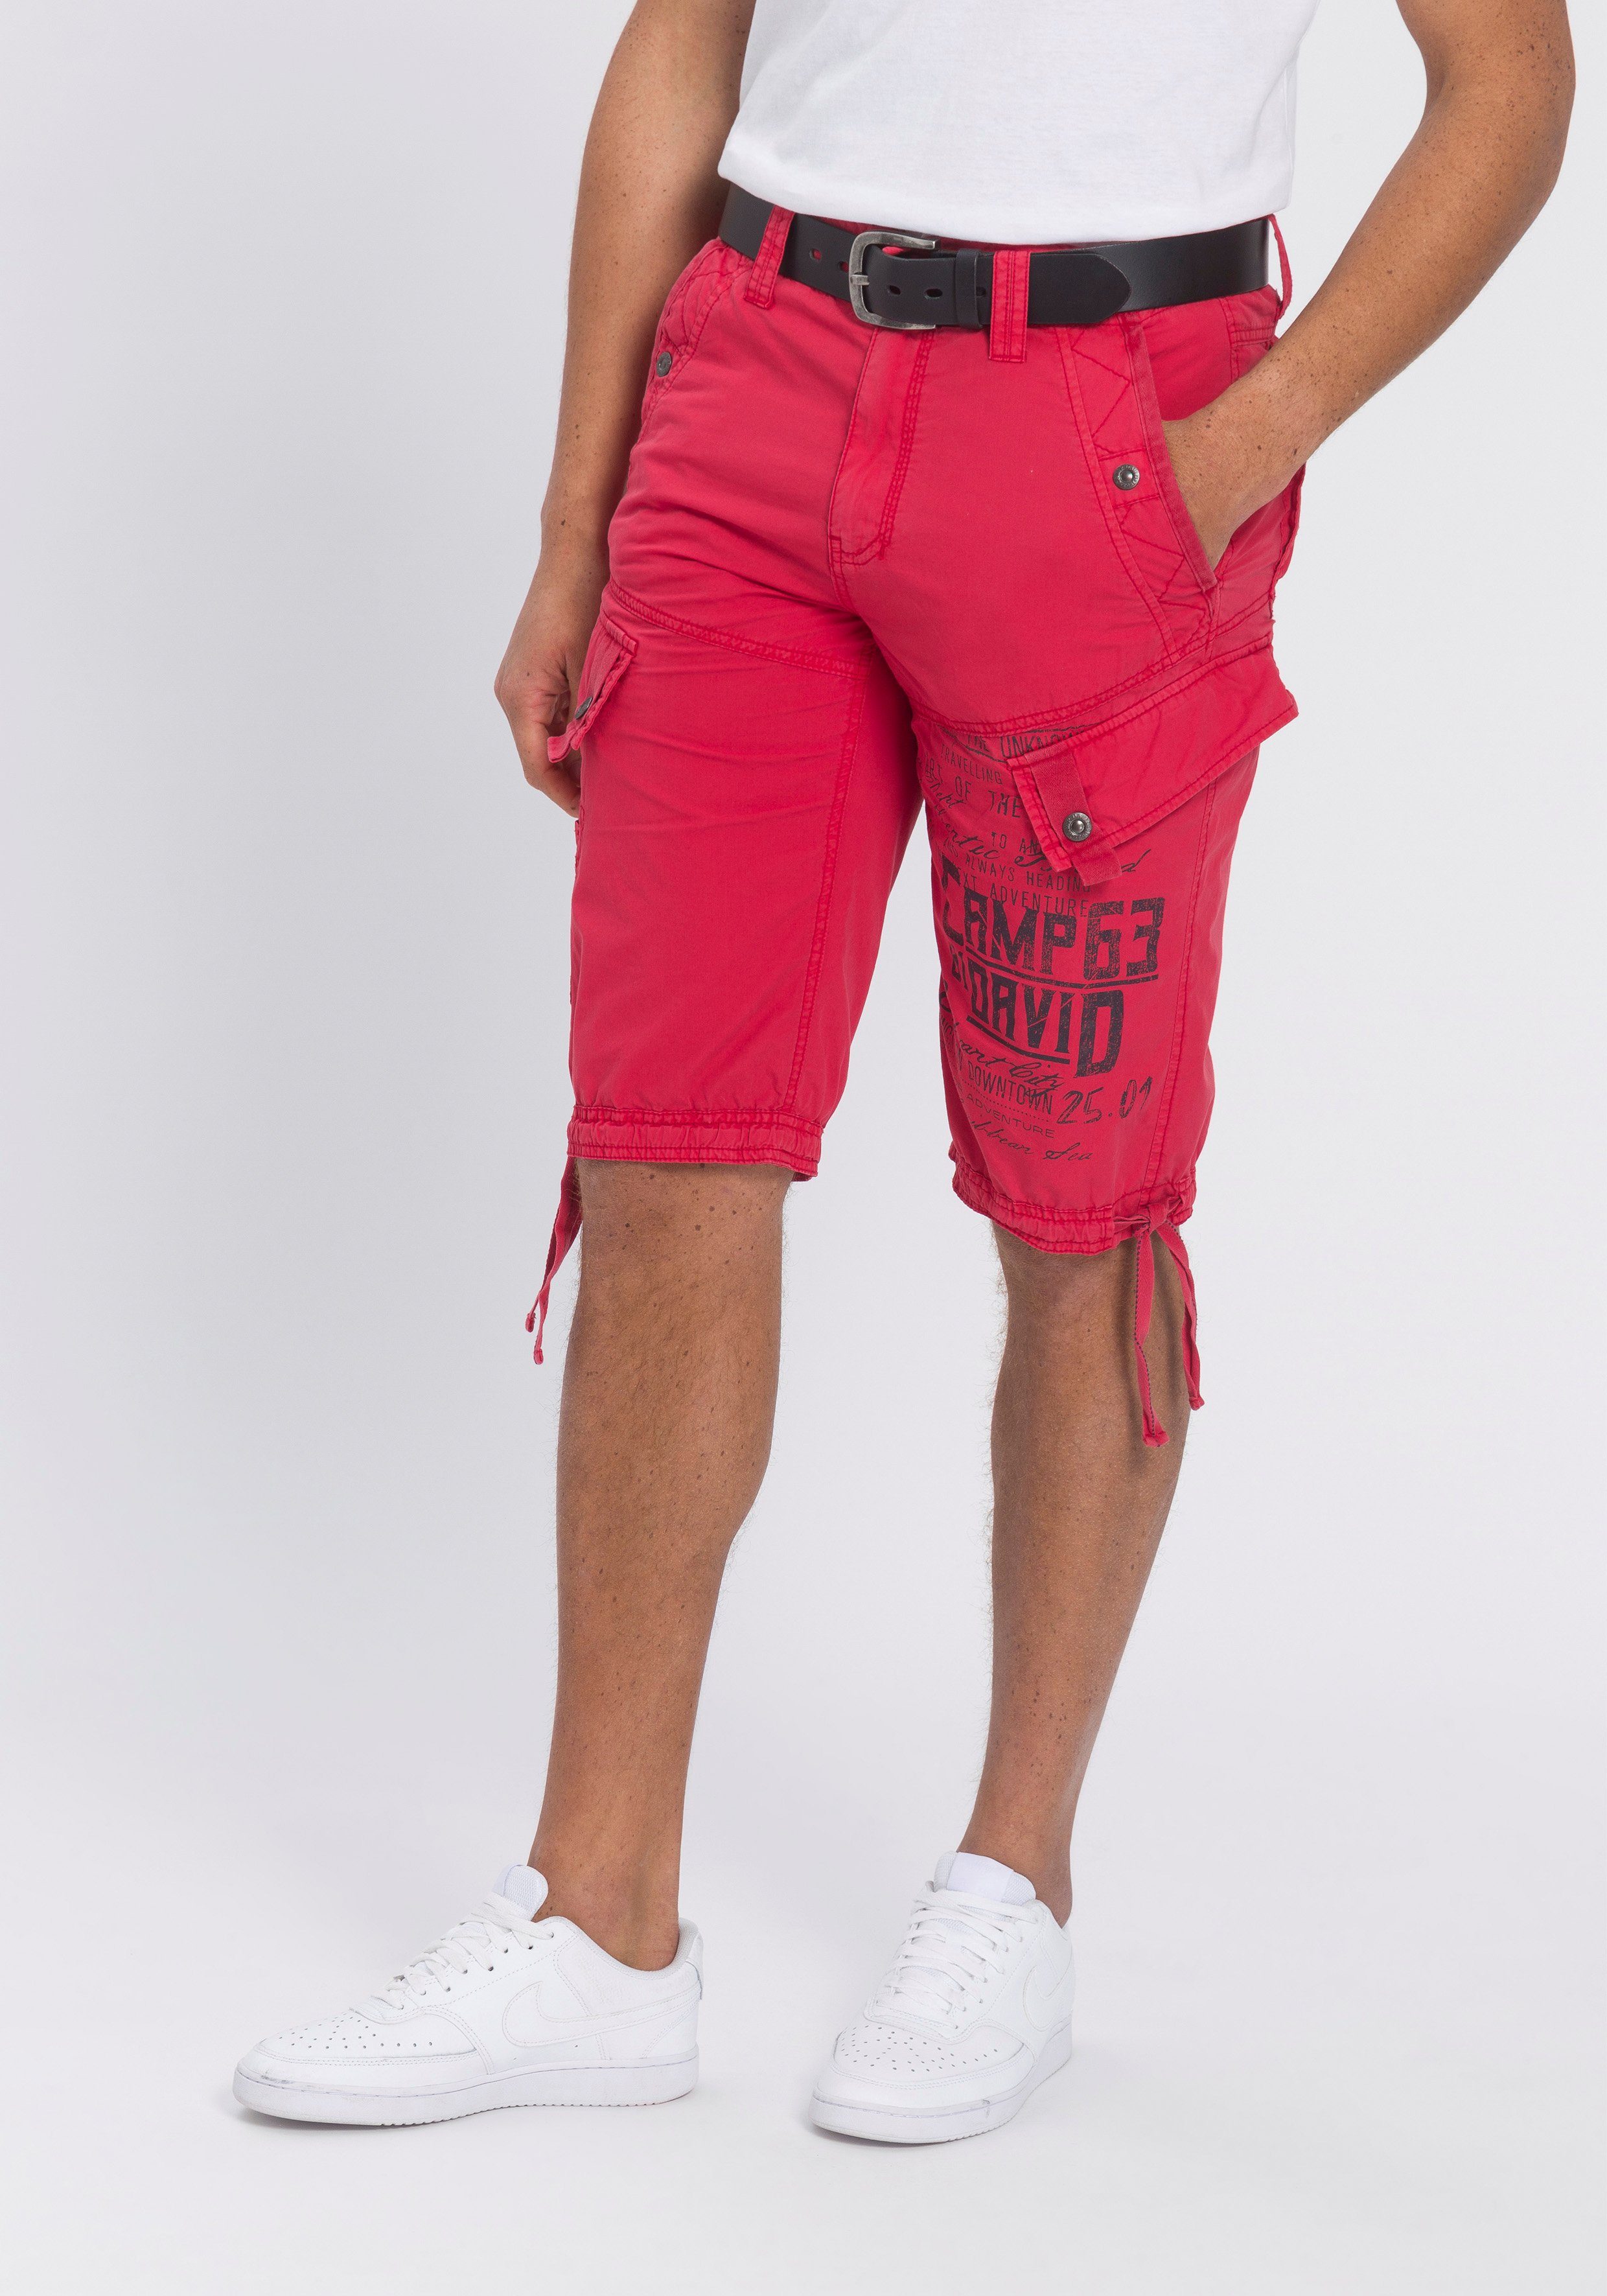 CAMP DAVID Shorts online kaufen | OTTO